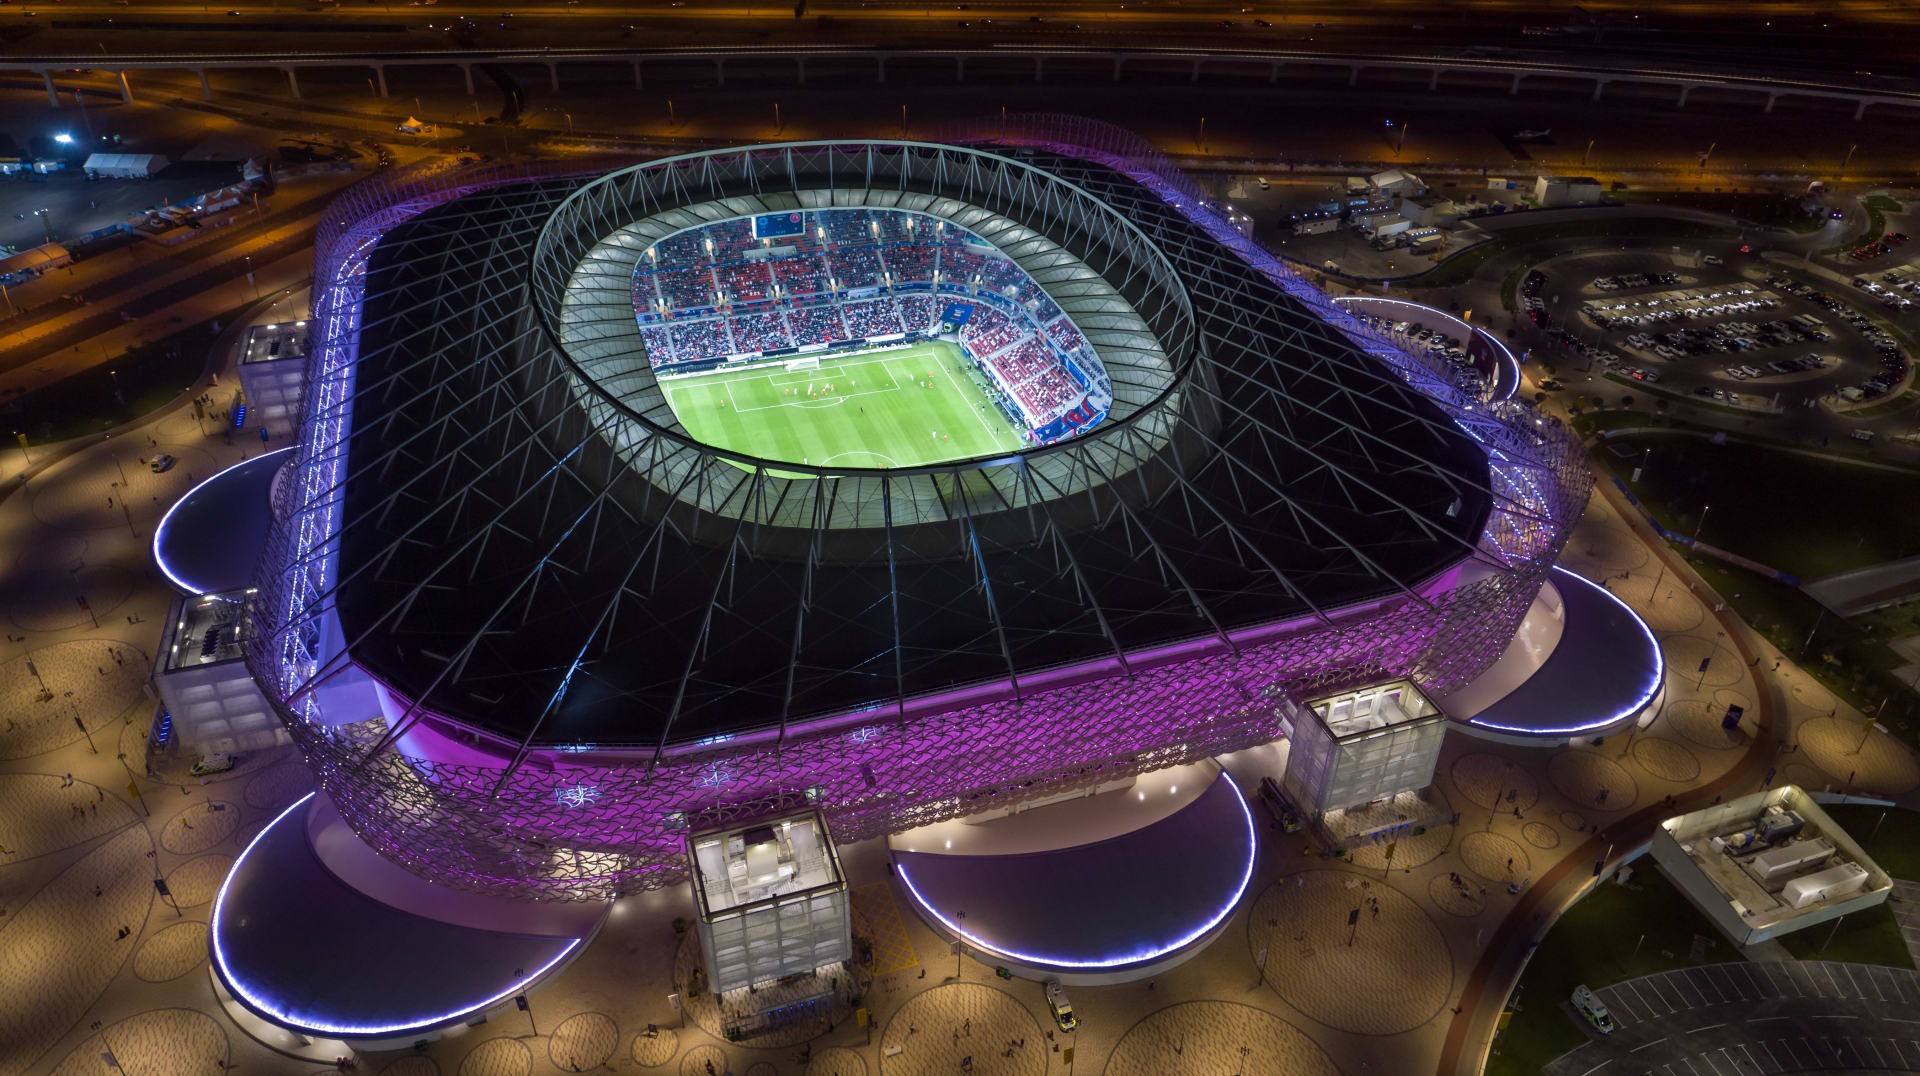 جدول مباريات كأس العالم PDF مونديال قطر بي دي اف 2022 - موعد المباراة النهائية كأس العالم في قطر 